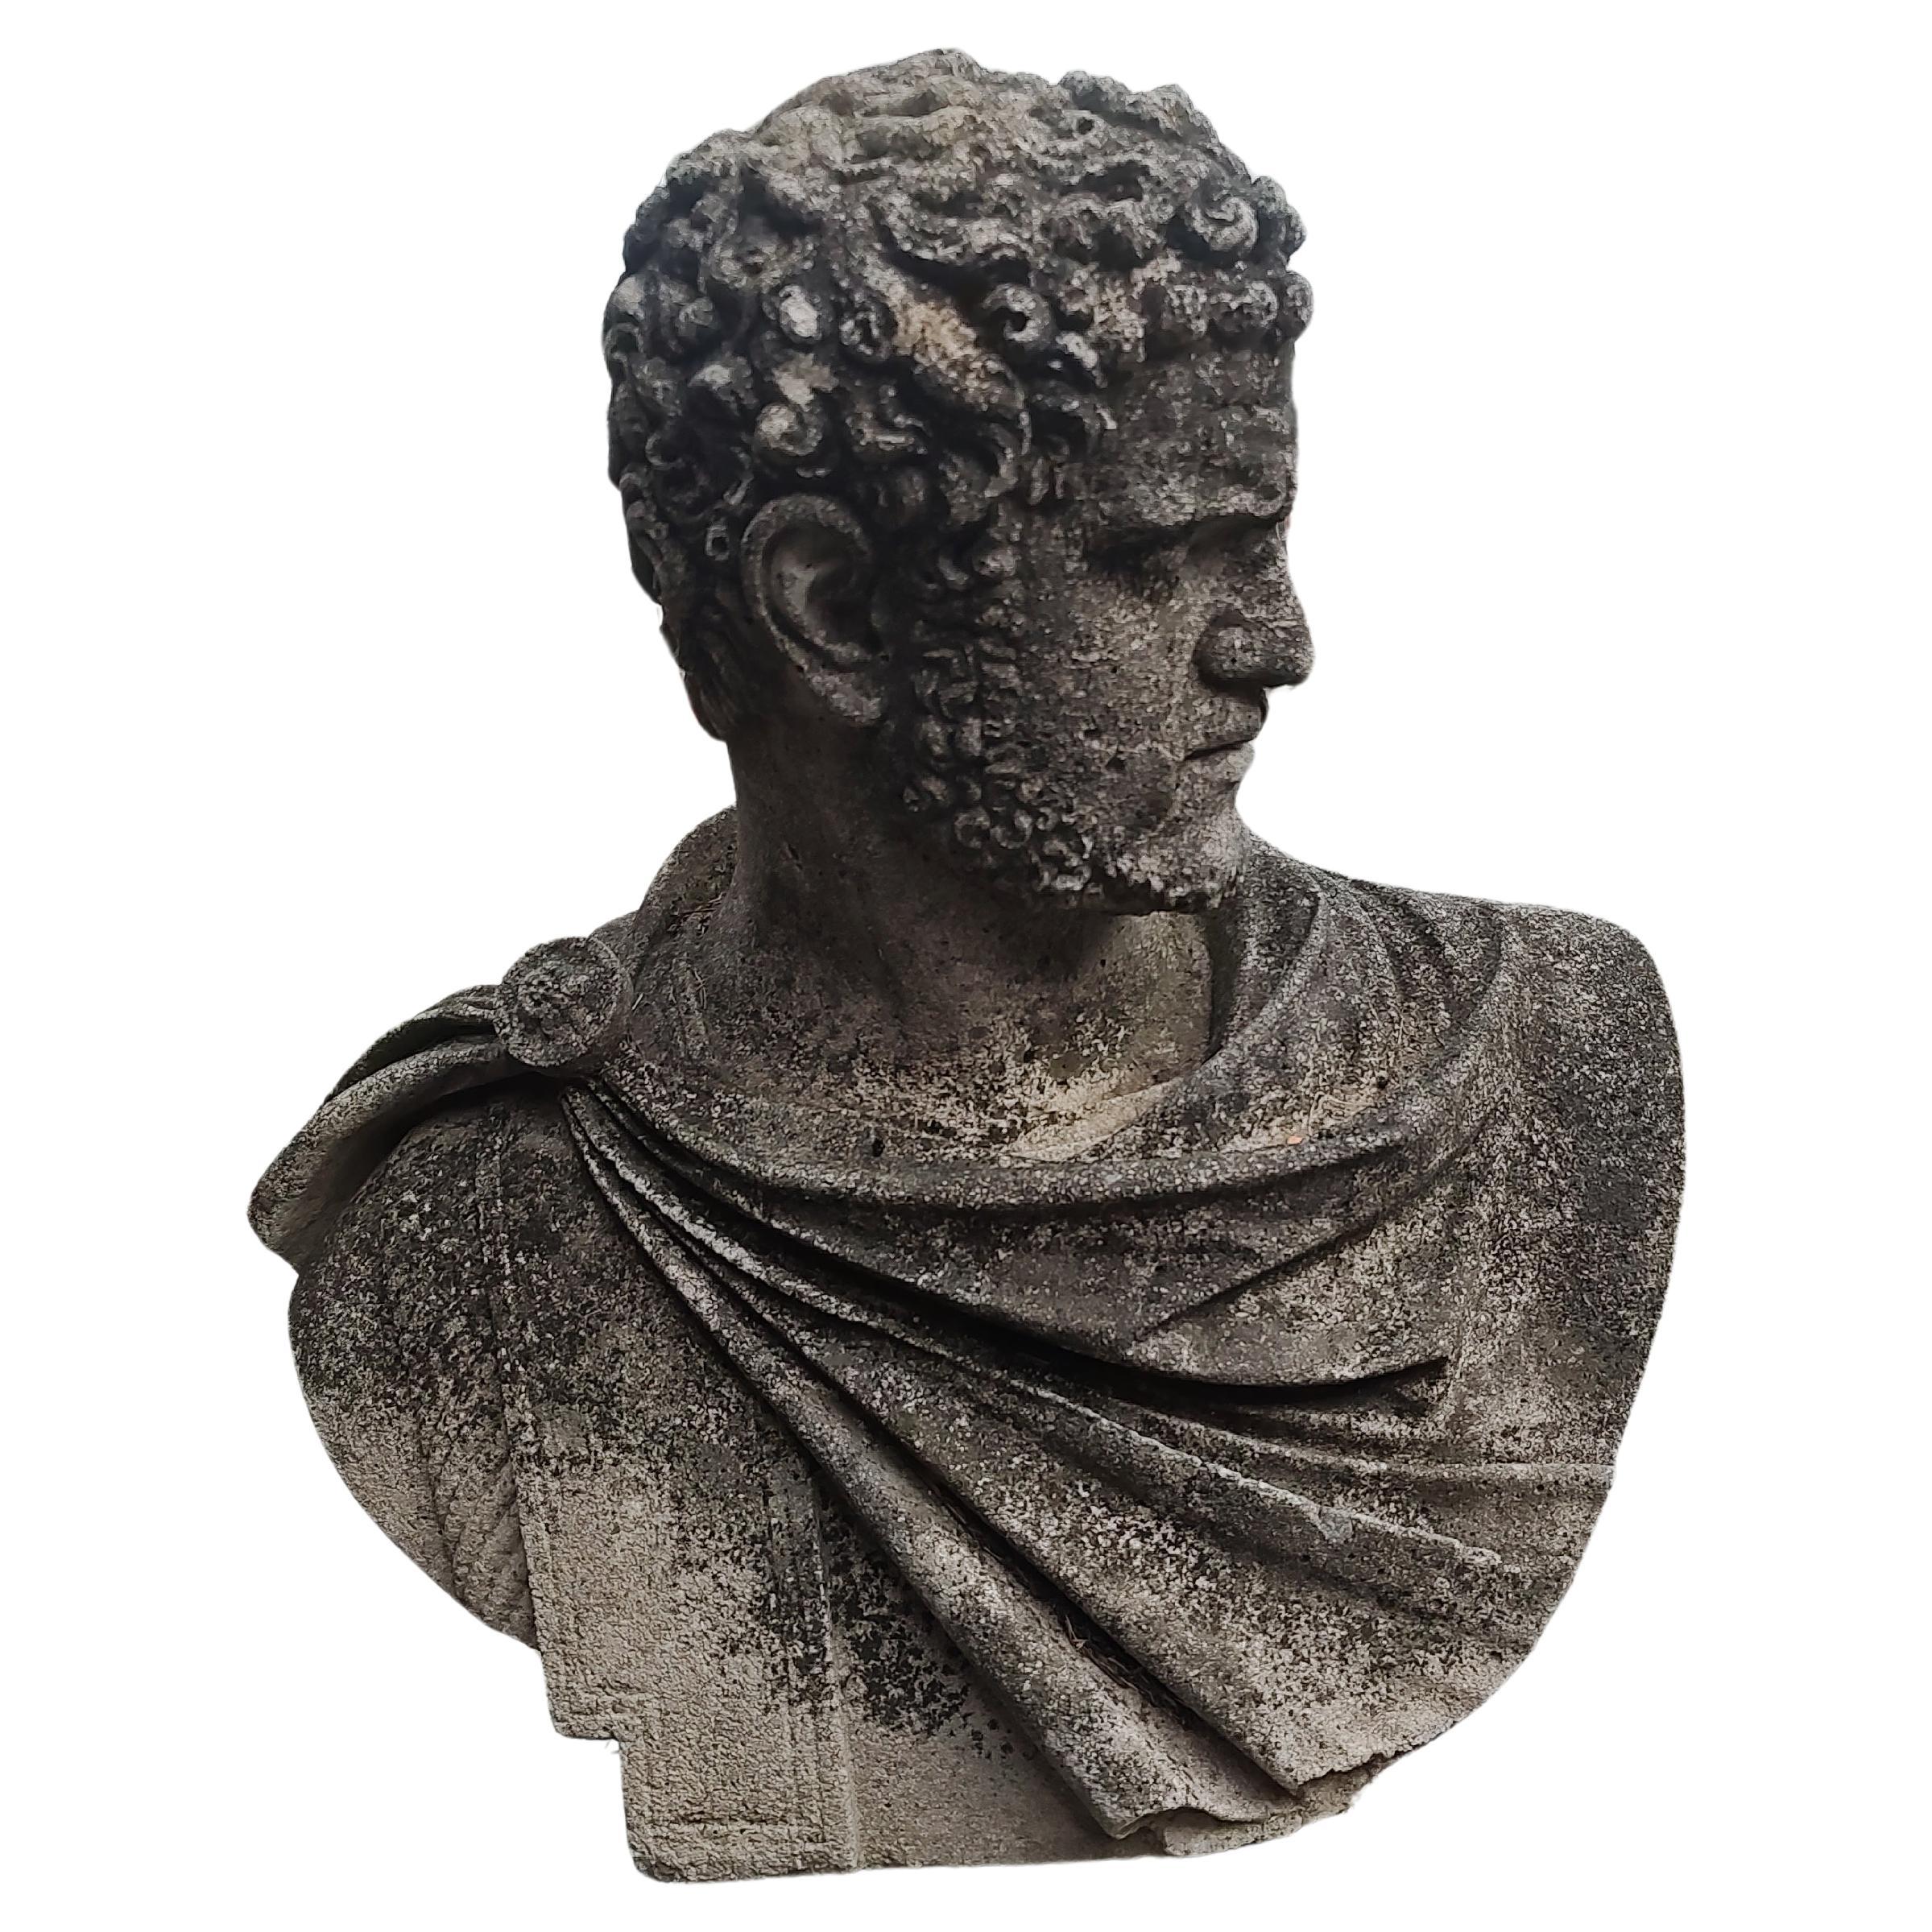 Fabuleux buste en calcaire moulé représentant un dignitaire romain, peut-être César ou Auguste. Moulage de pierre très détaillé avec une pose inclinée en tenue romaine typique. Des cheveux fantastiques ! La patine est intacte et fabuleuse, uniforme